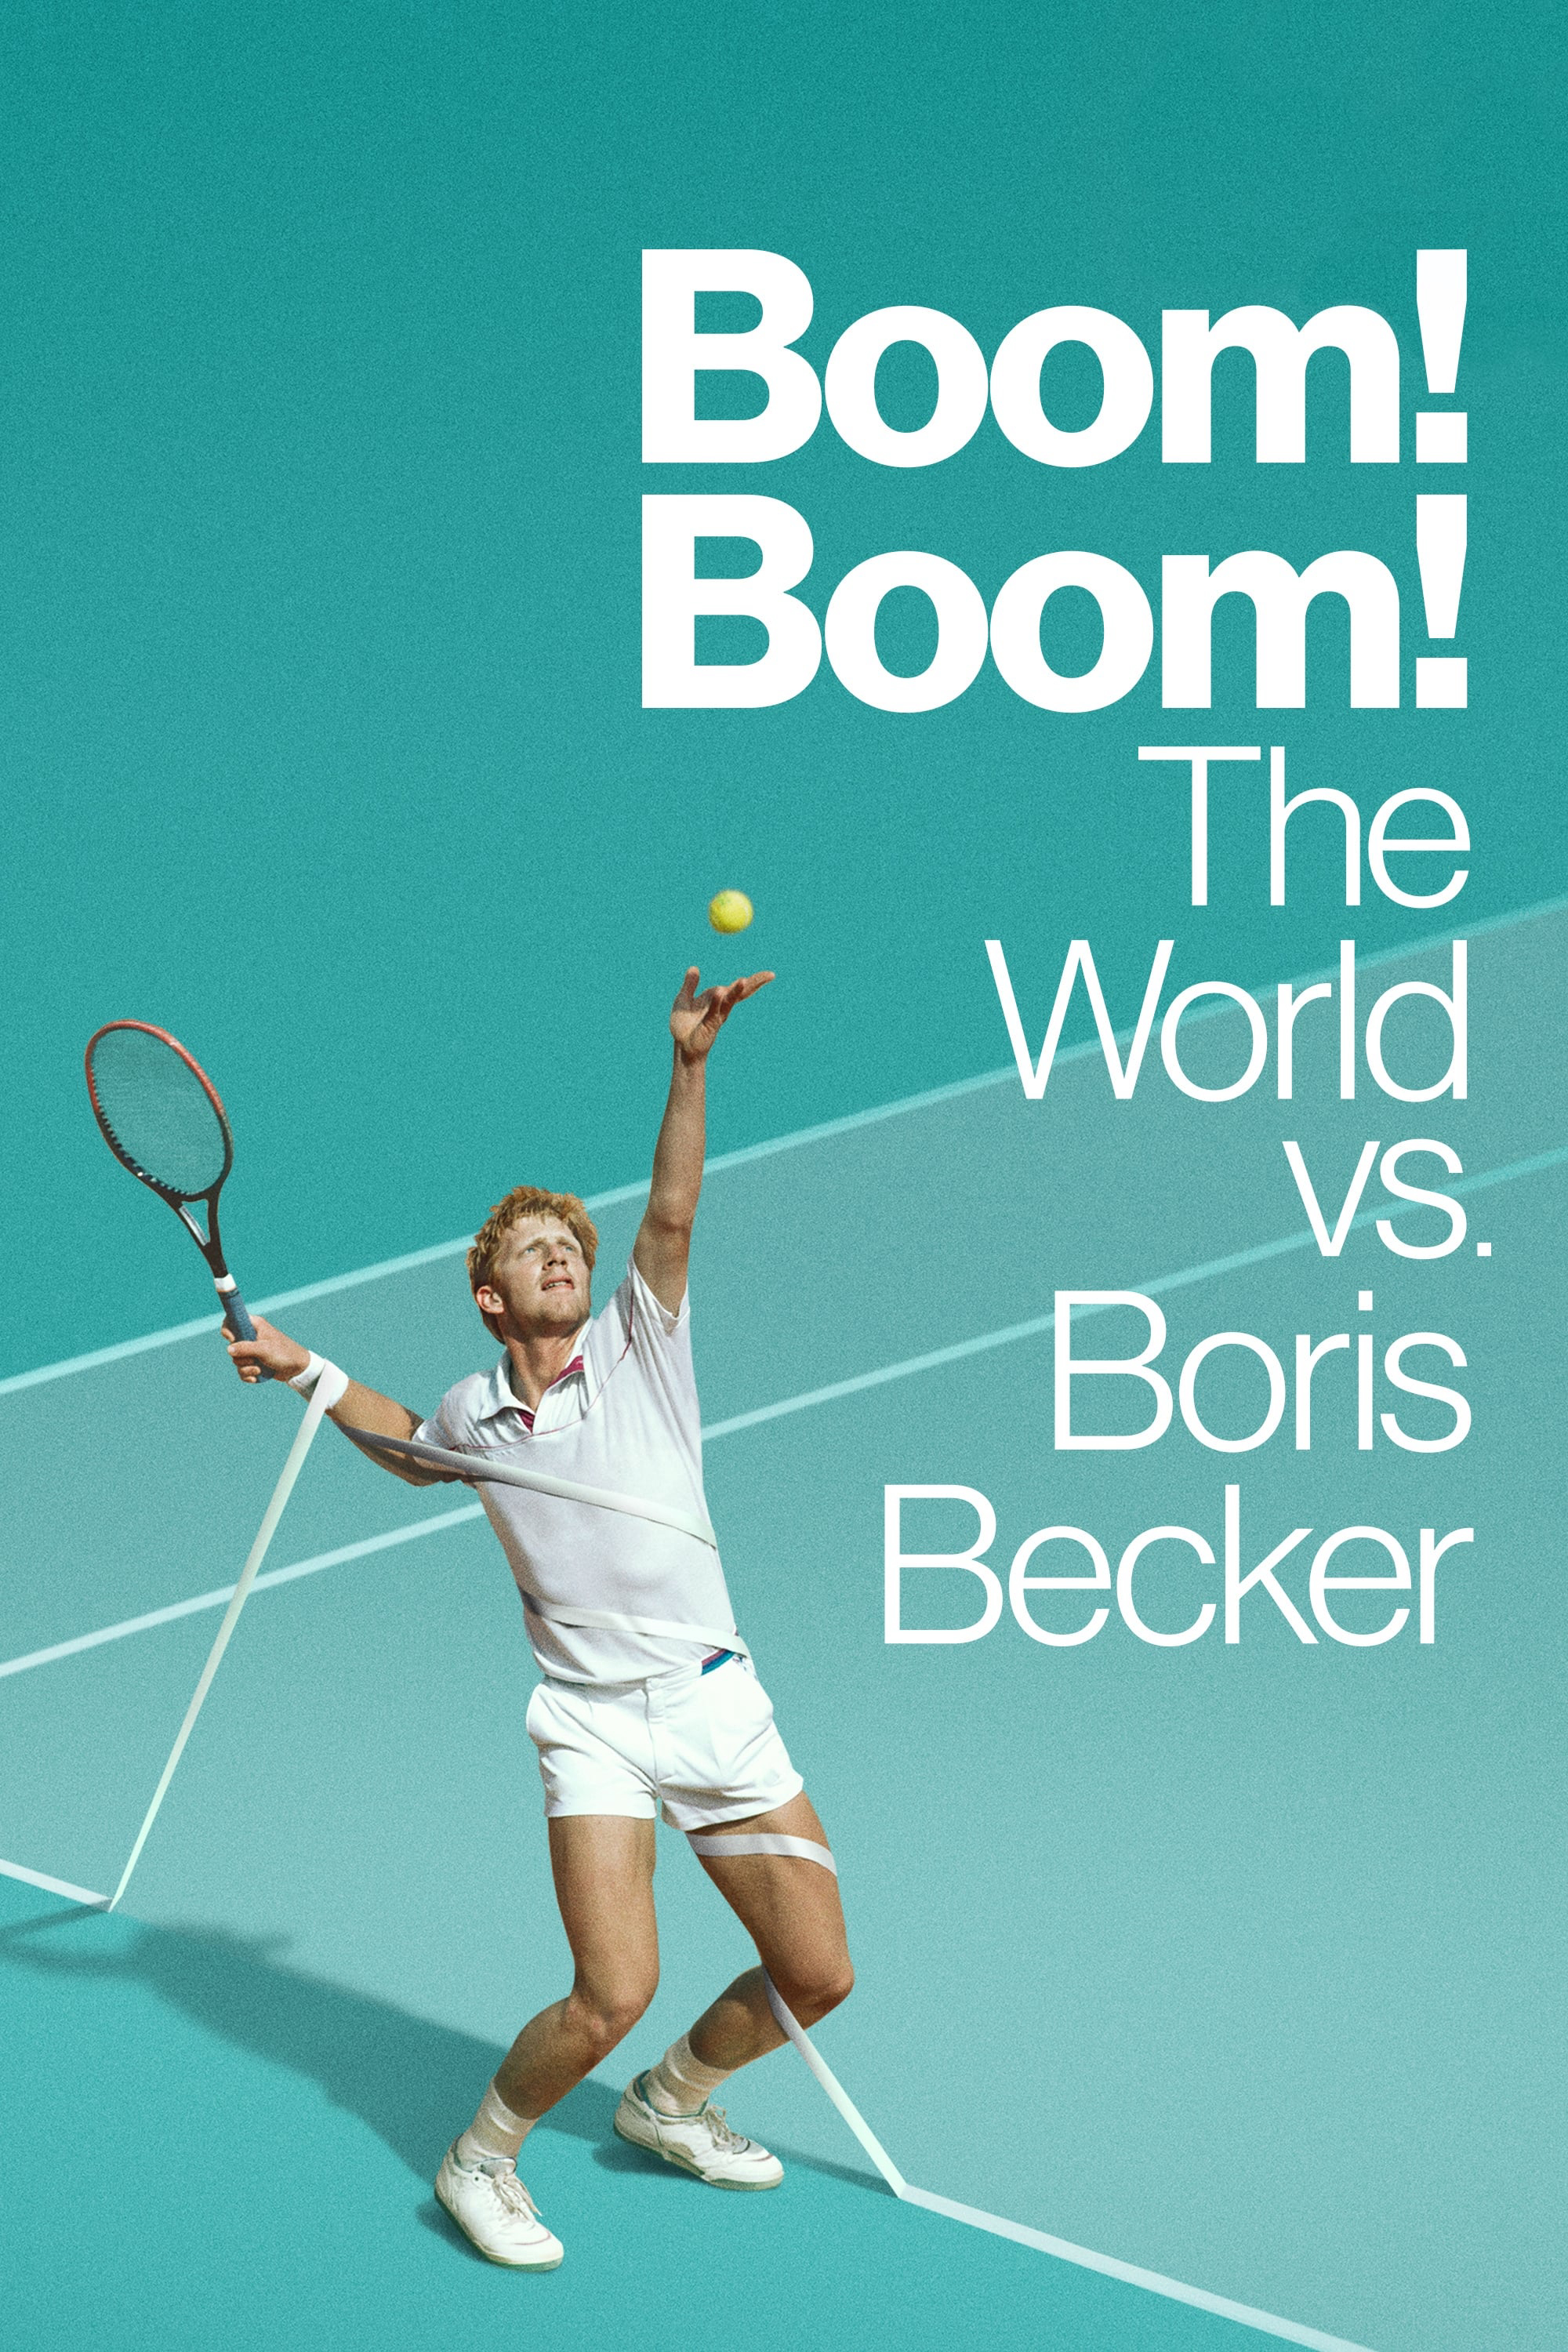 Poster Phim Cuộc Đời Thăng Trầm Của Boris Becker (Boom! Boom! The World vs. Boris Becker)